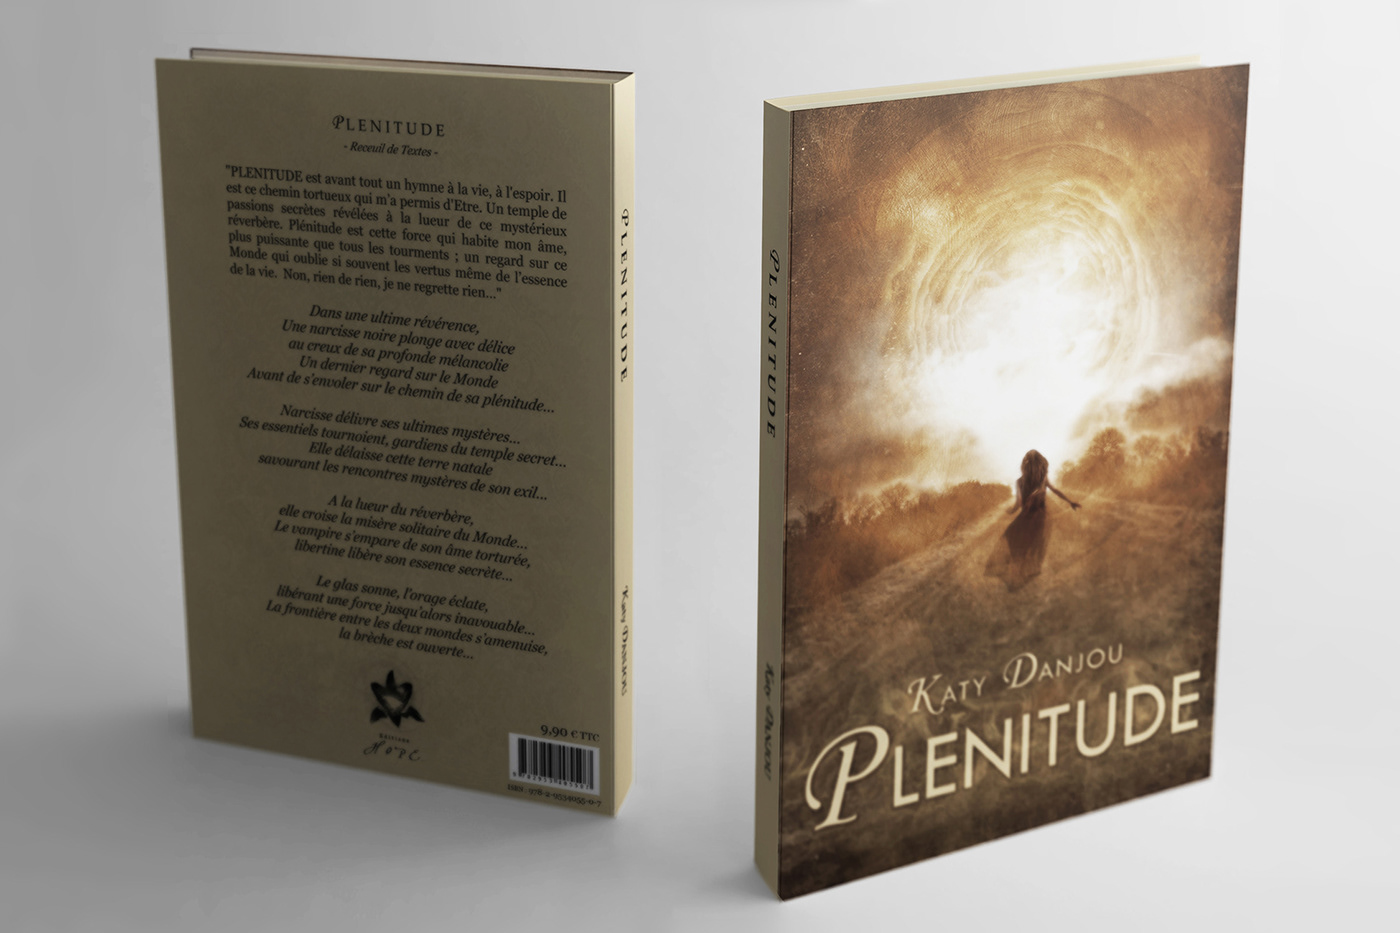 plenitude book cover